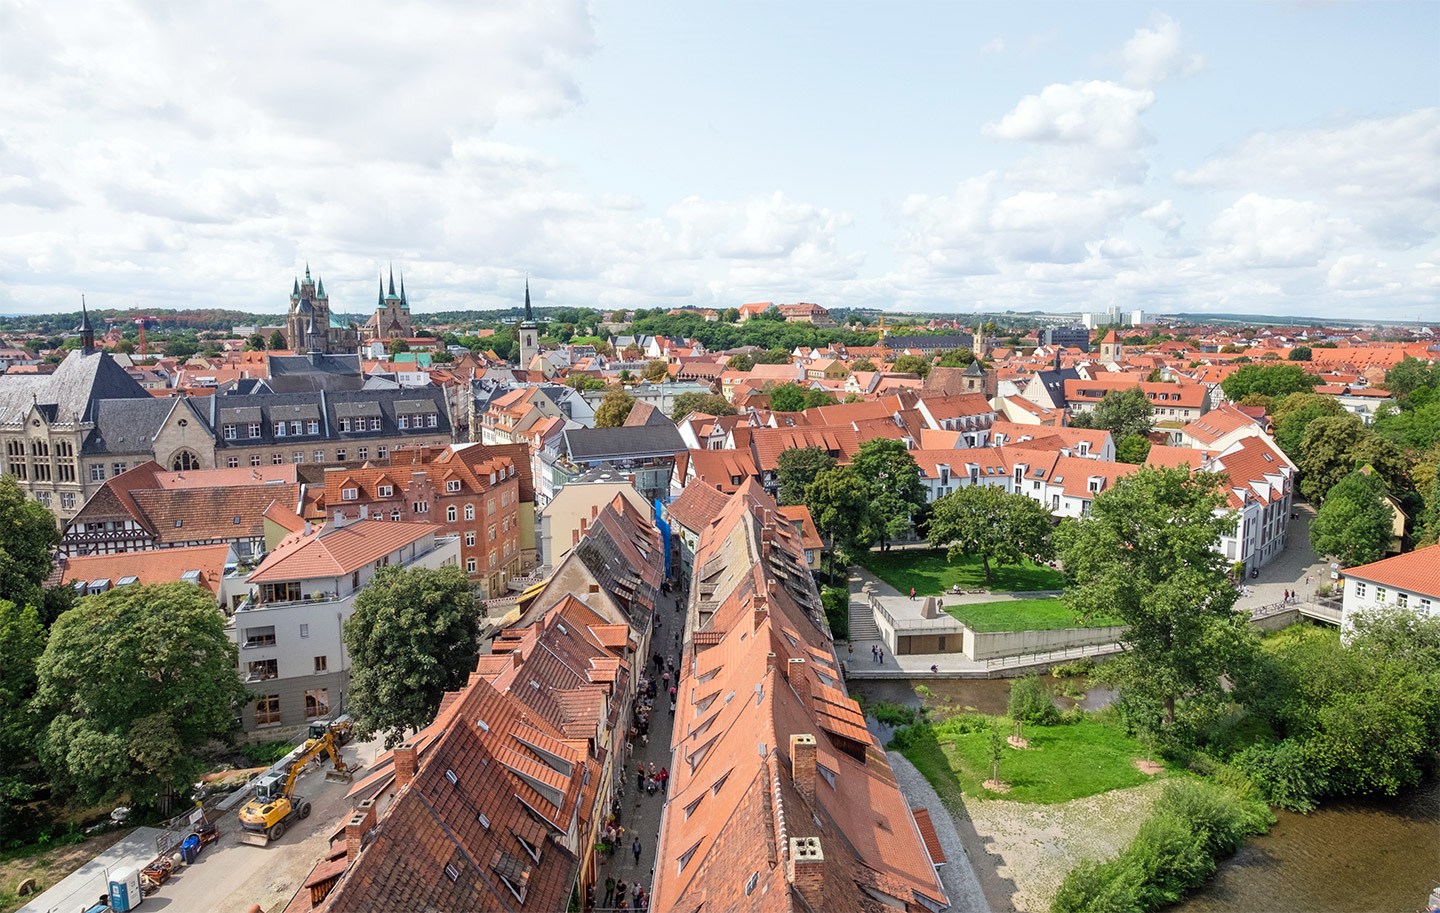 Views over Erfurt, Germany